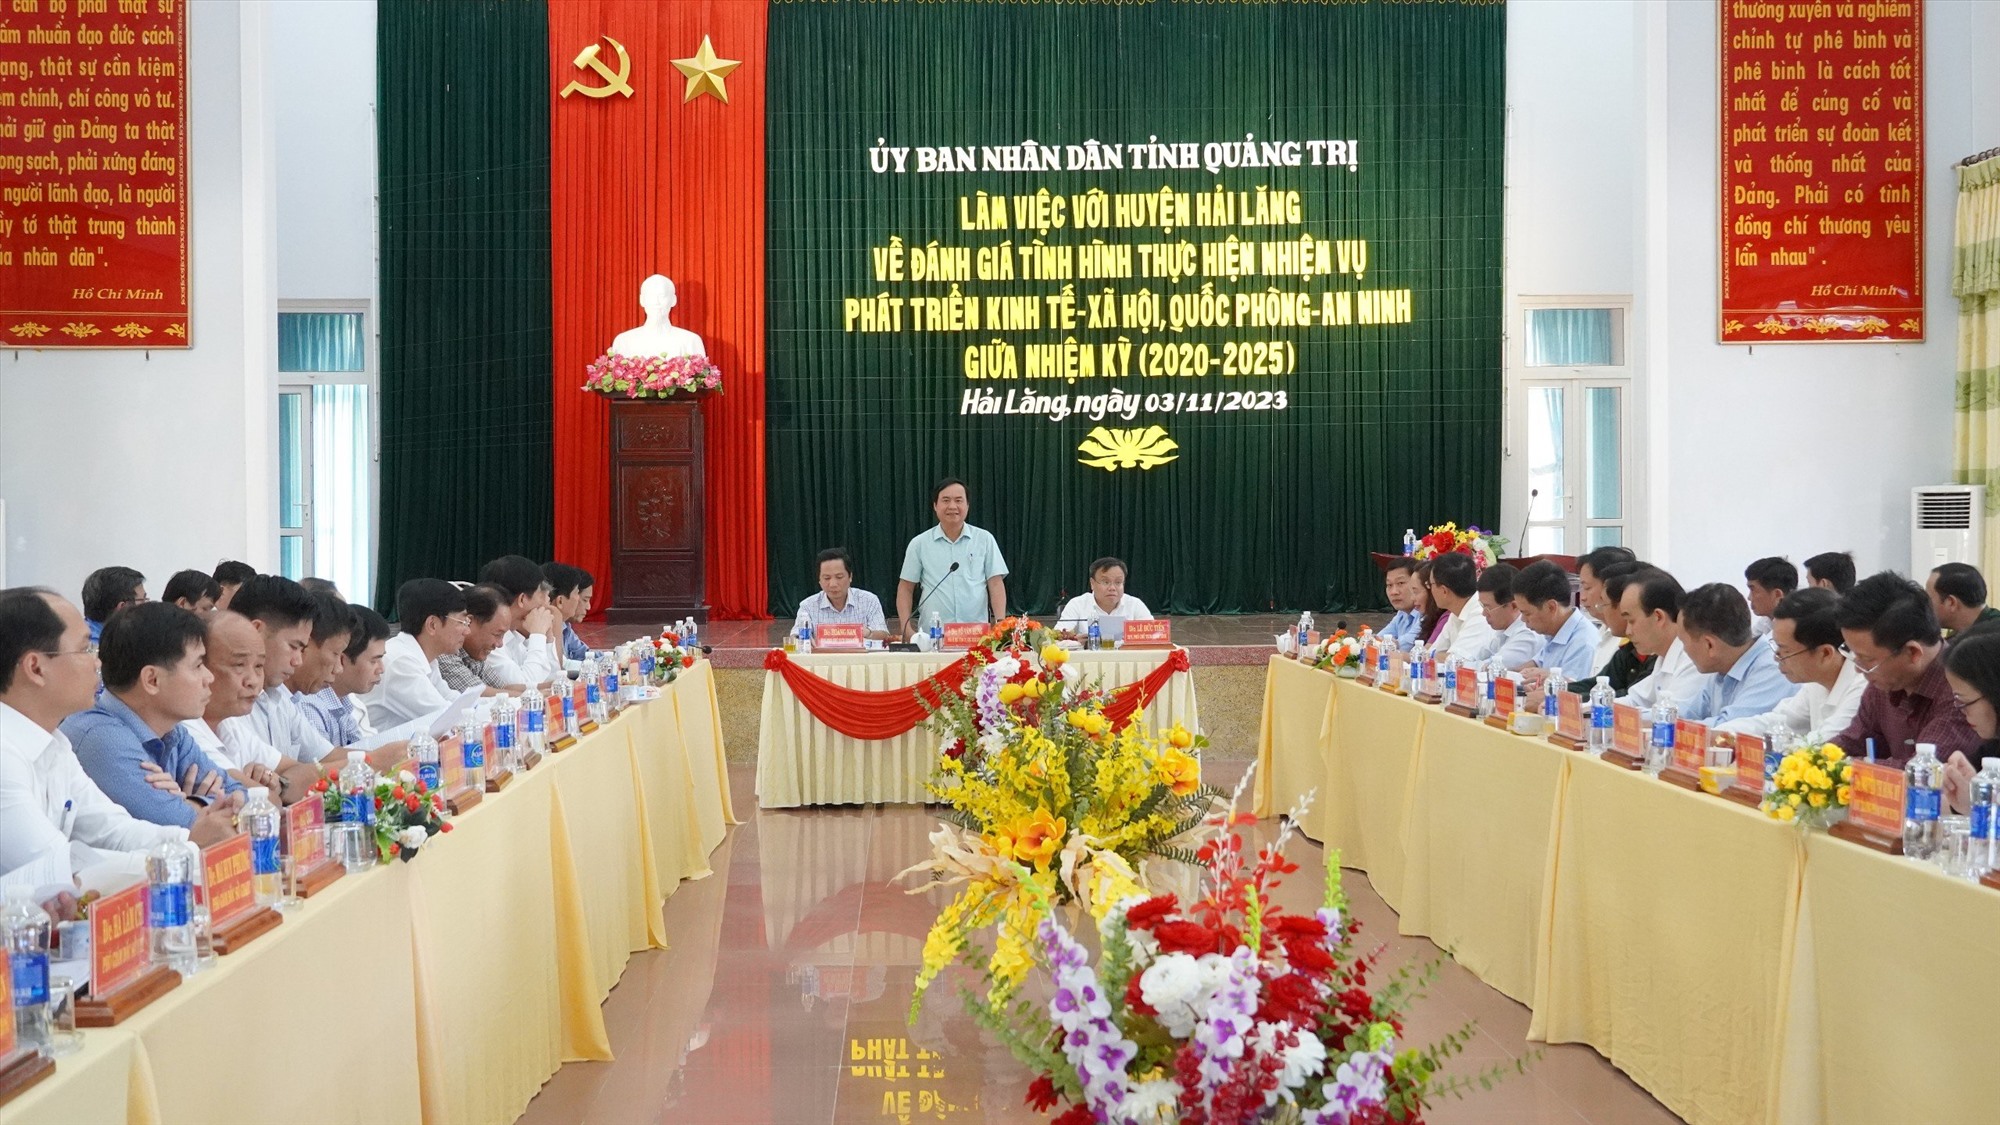 Chủ tịch UBND tỉnh Võ Văn Hưng đánh giá cao sự nỗ lực, cố gắng của Đảng bộ, chính quyền và Nhân dân huyện Hải Lăng trong nửa nhiệm kỳ qua - Ảnh: H.T